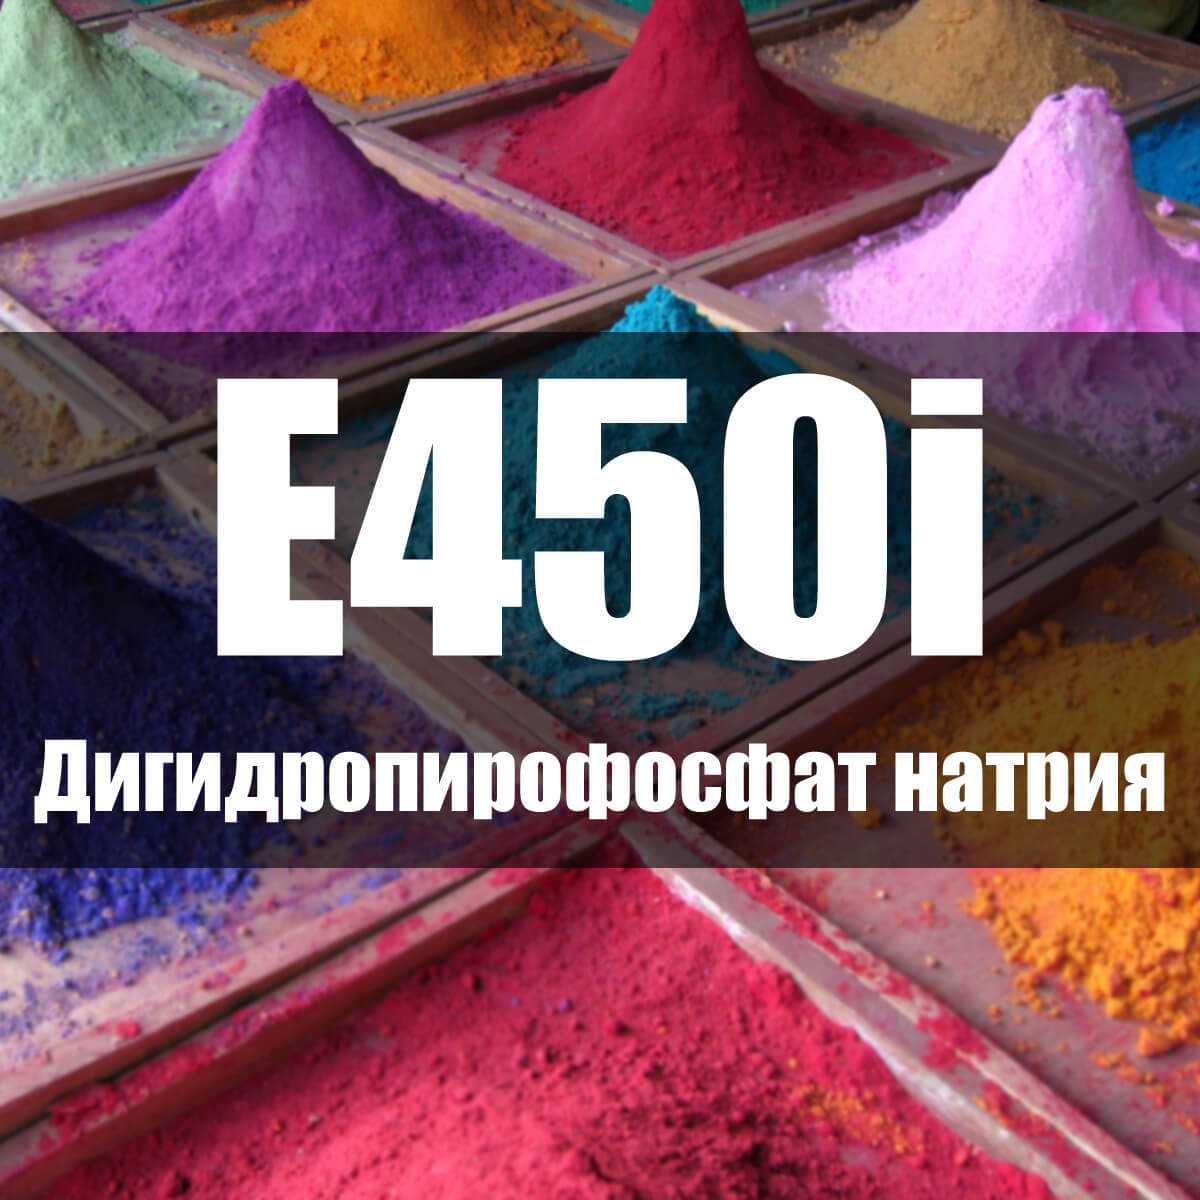 Особенности дигидропирофосфата натрия, химические и физические свойства Использование Е450і при производстве консервов из морепродуктов, хлебобулочных изделий